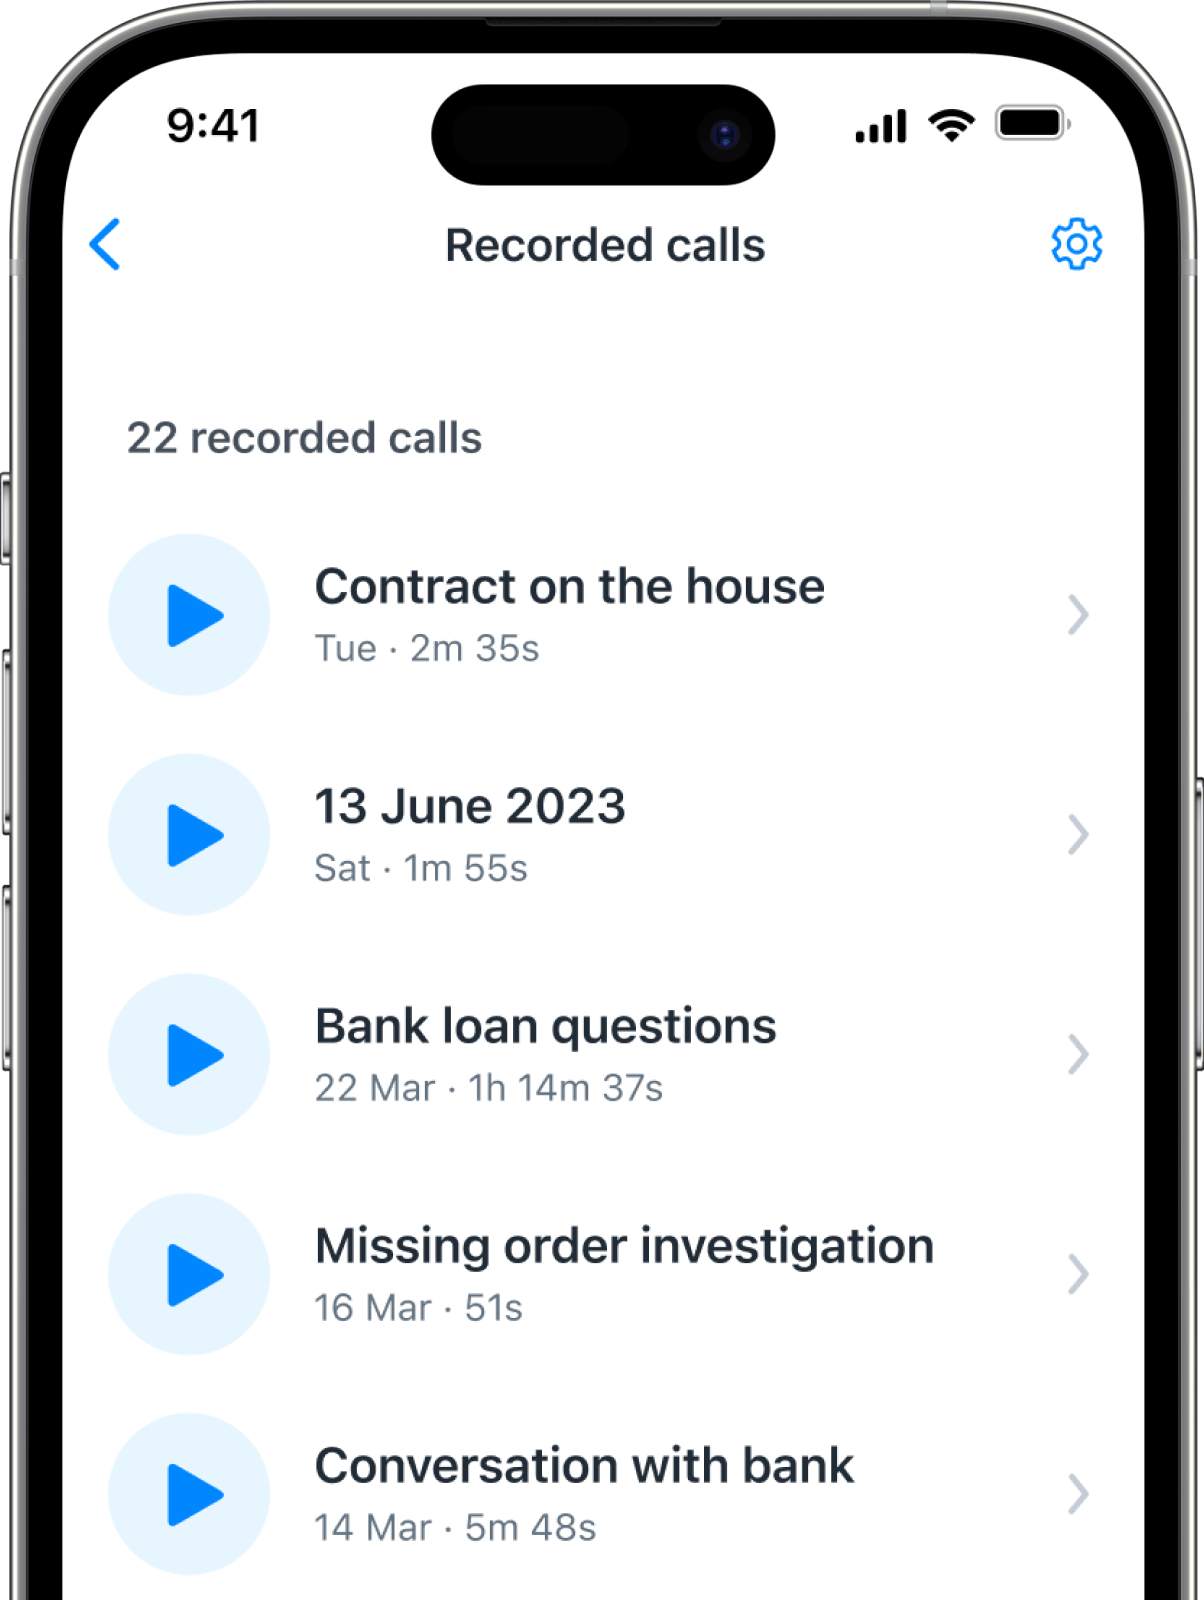 Recorded Calls Screen in Truecaller App